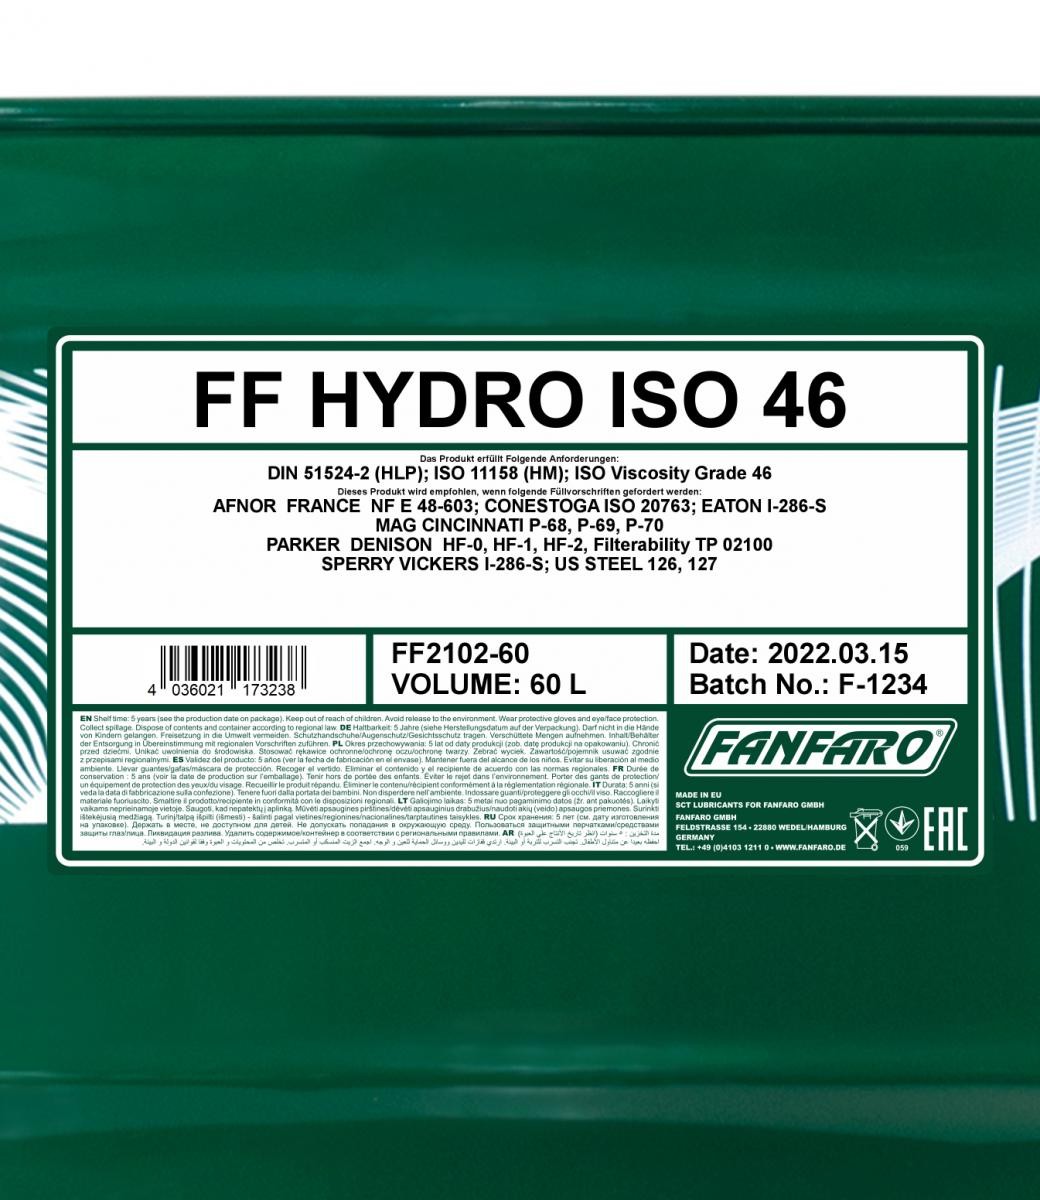 FANFARO Hydraulic fluid FF2102-60